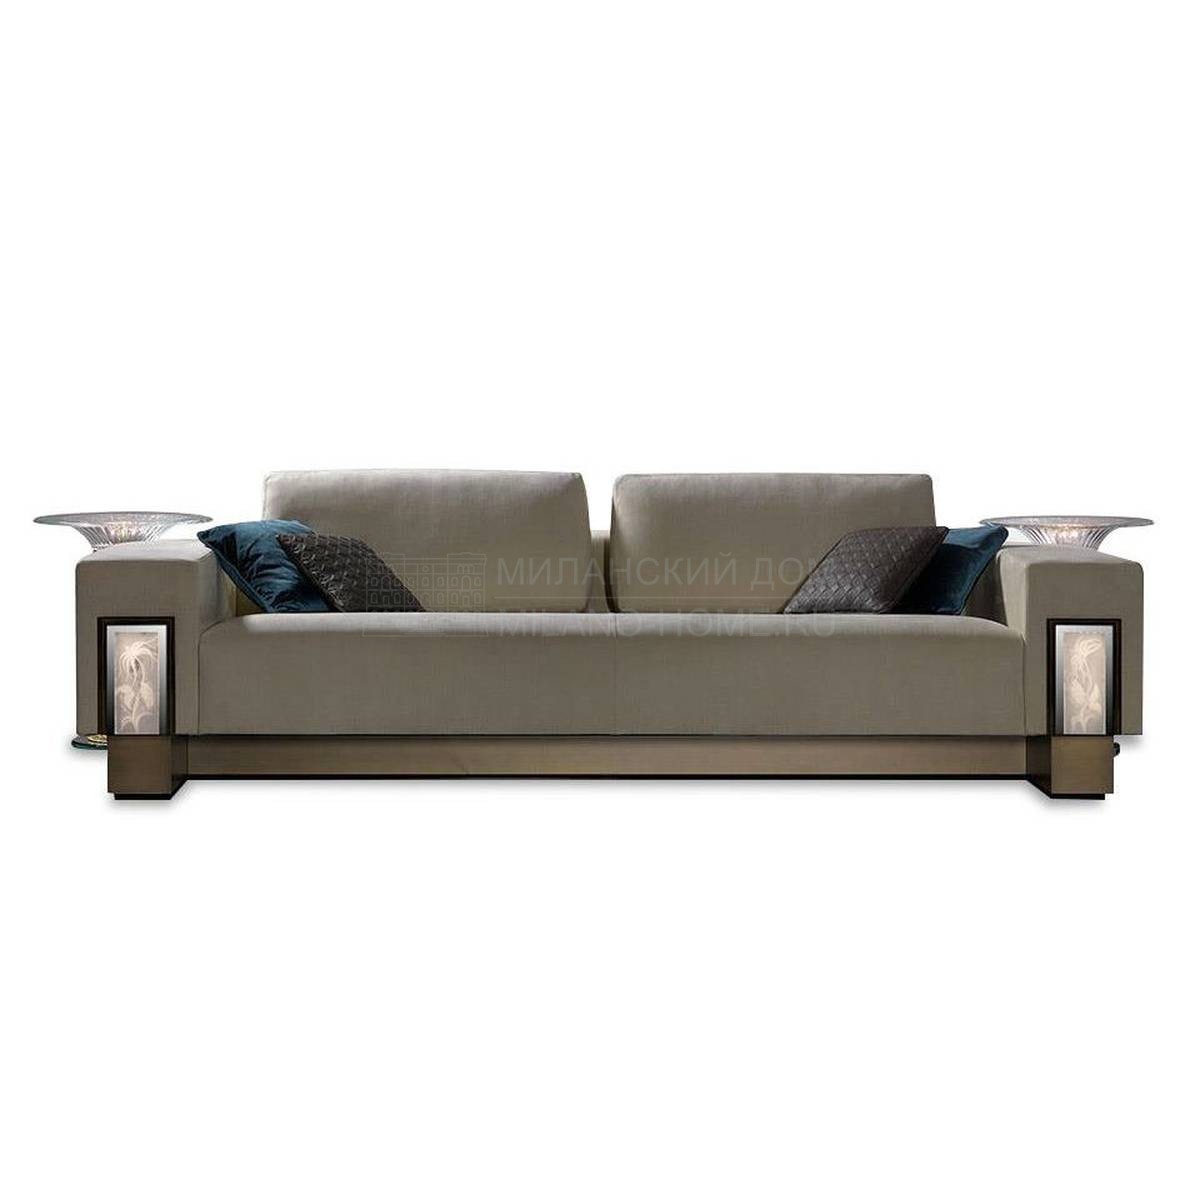 Прямой диван Palazzo ducale sofa из Италии фабрики REFLEX ANGELO